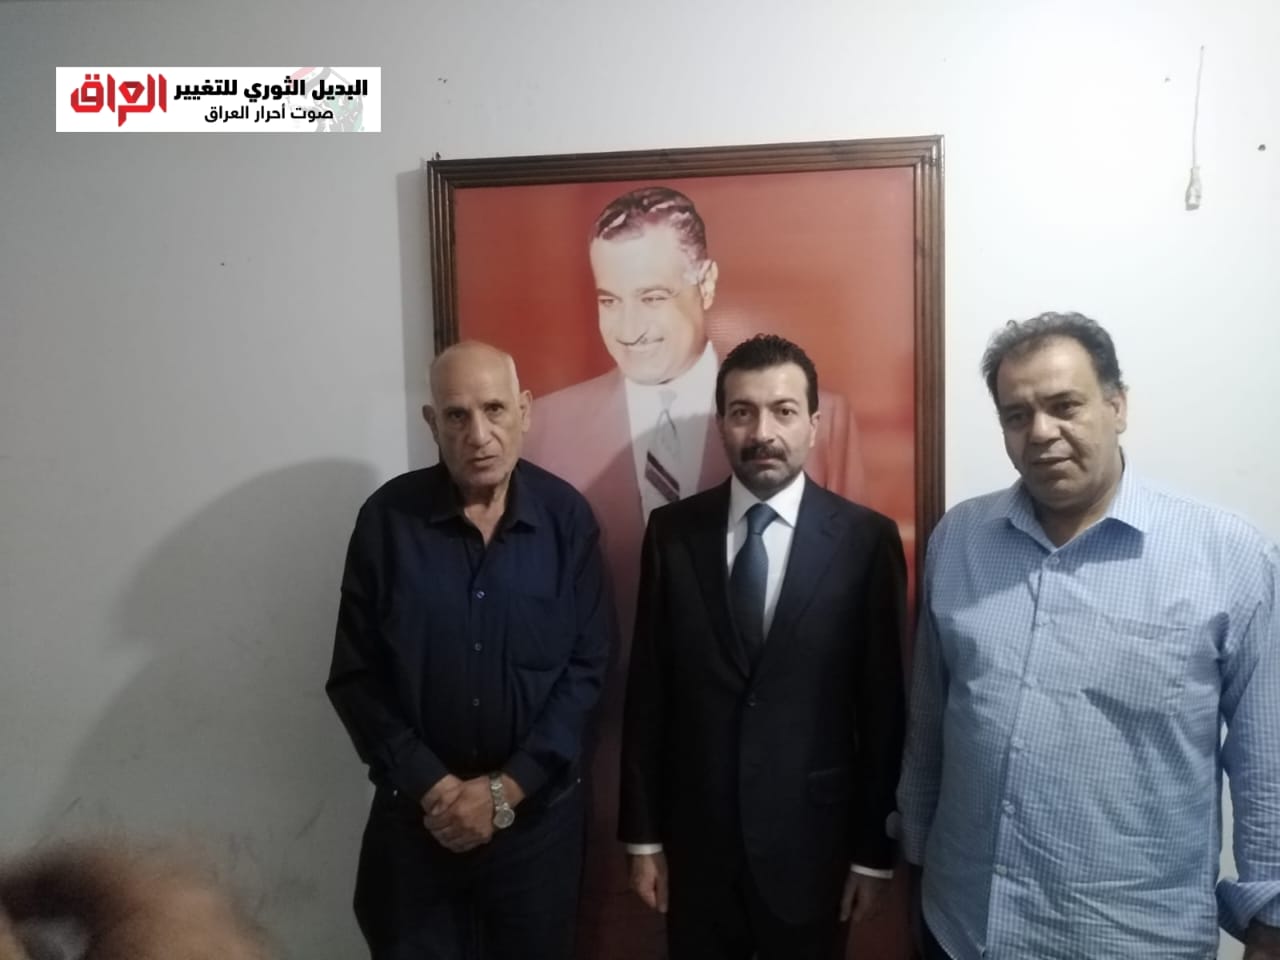 إلتقى الأمين العام لحزب الكرامة المصري محمد بيومي بمكتبه في القاهرة، السيد علي عزيز أمين مسؤول المكتب السياسي لتنظيم